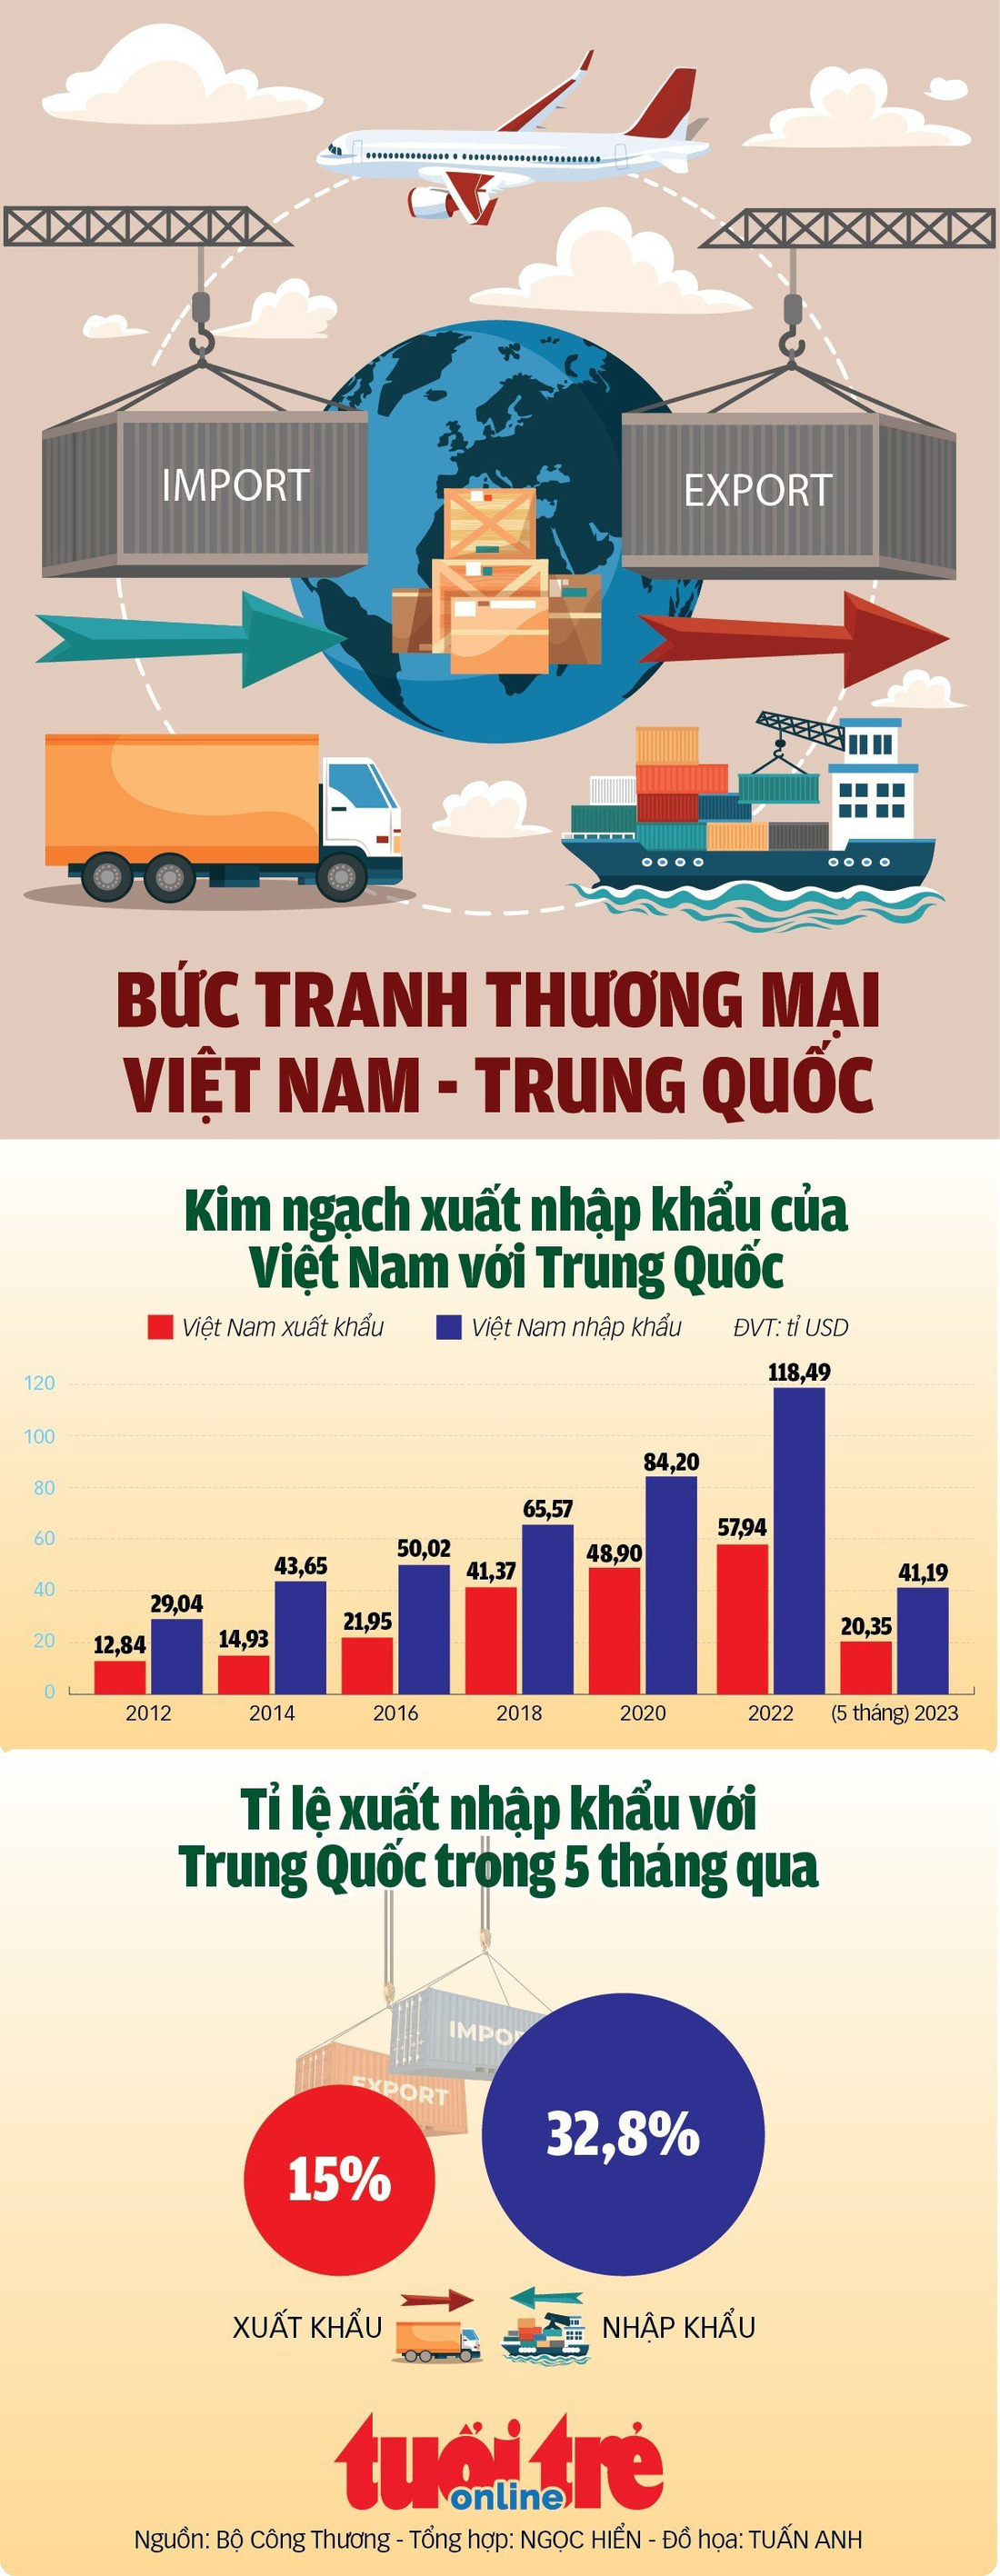 5 tháng, xuất nhập khẩu của Việt Nam với Trung Quốc đạt 61,5 tỉ USD - Ảnh 1.